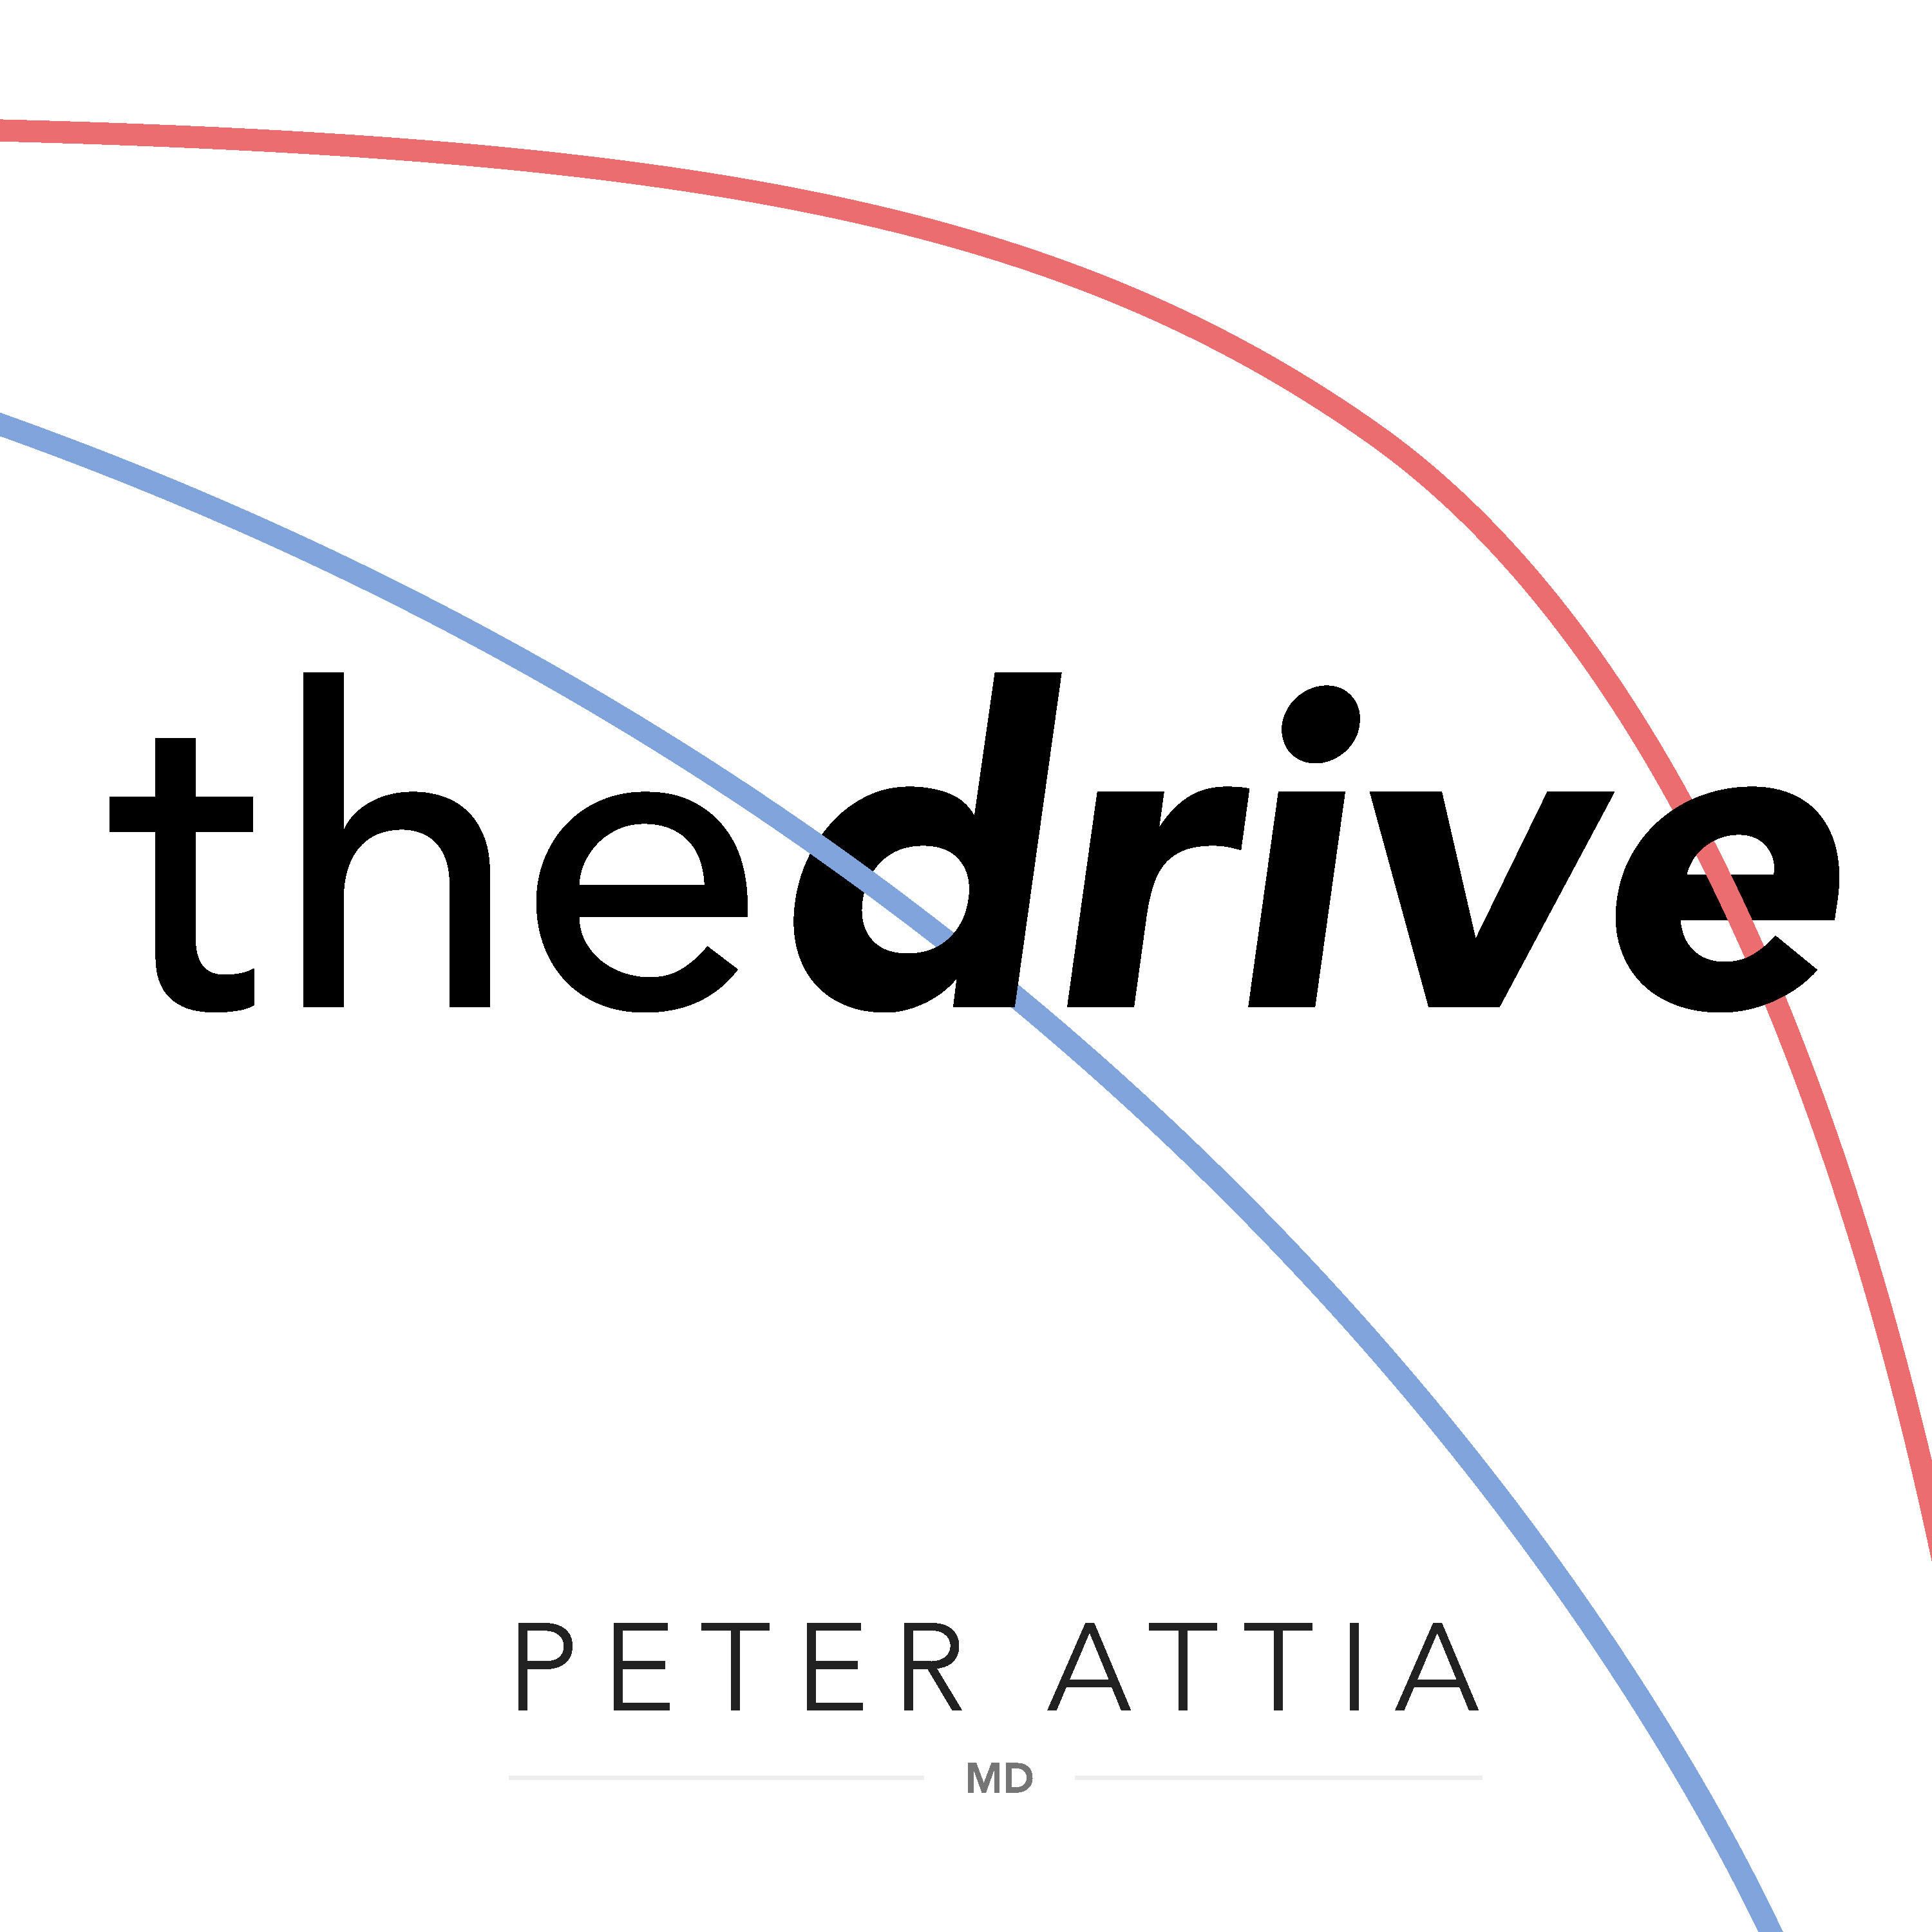 The Peter Attia Drive Intro